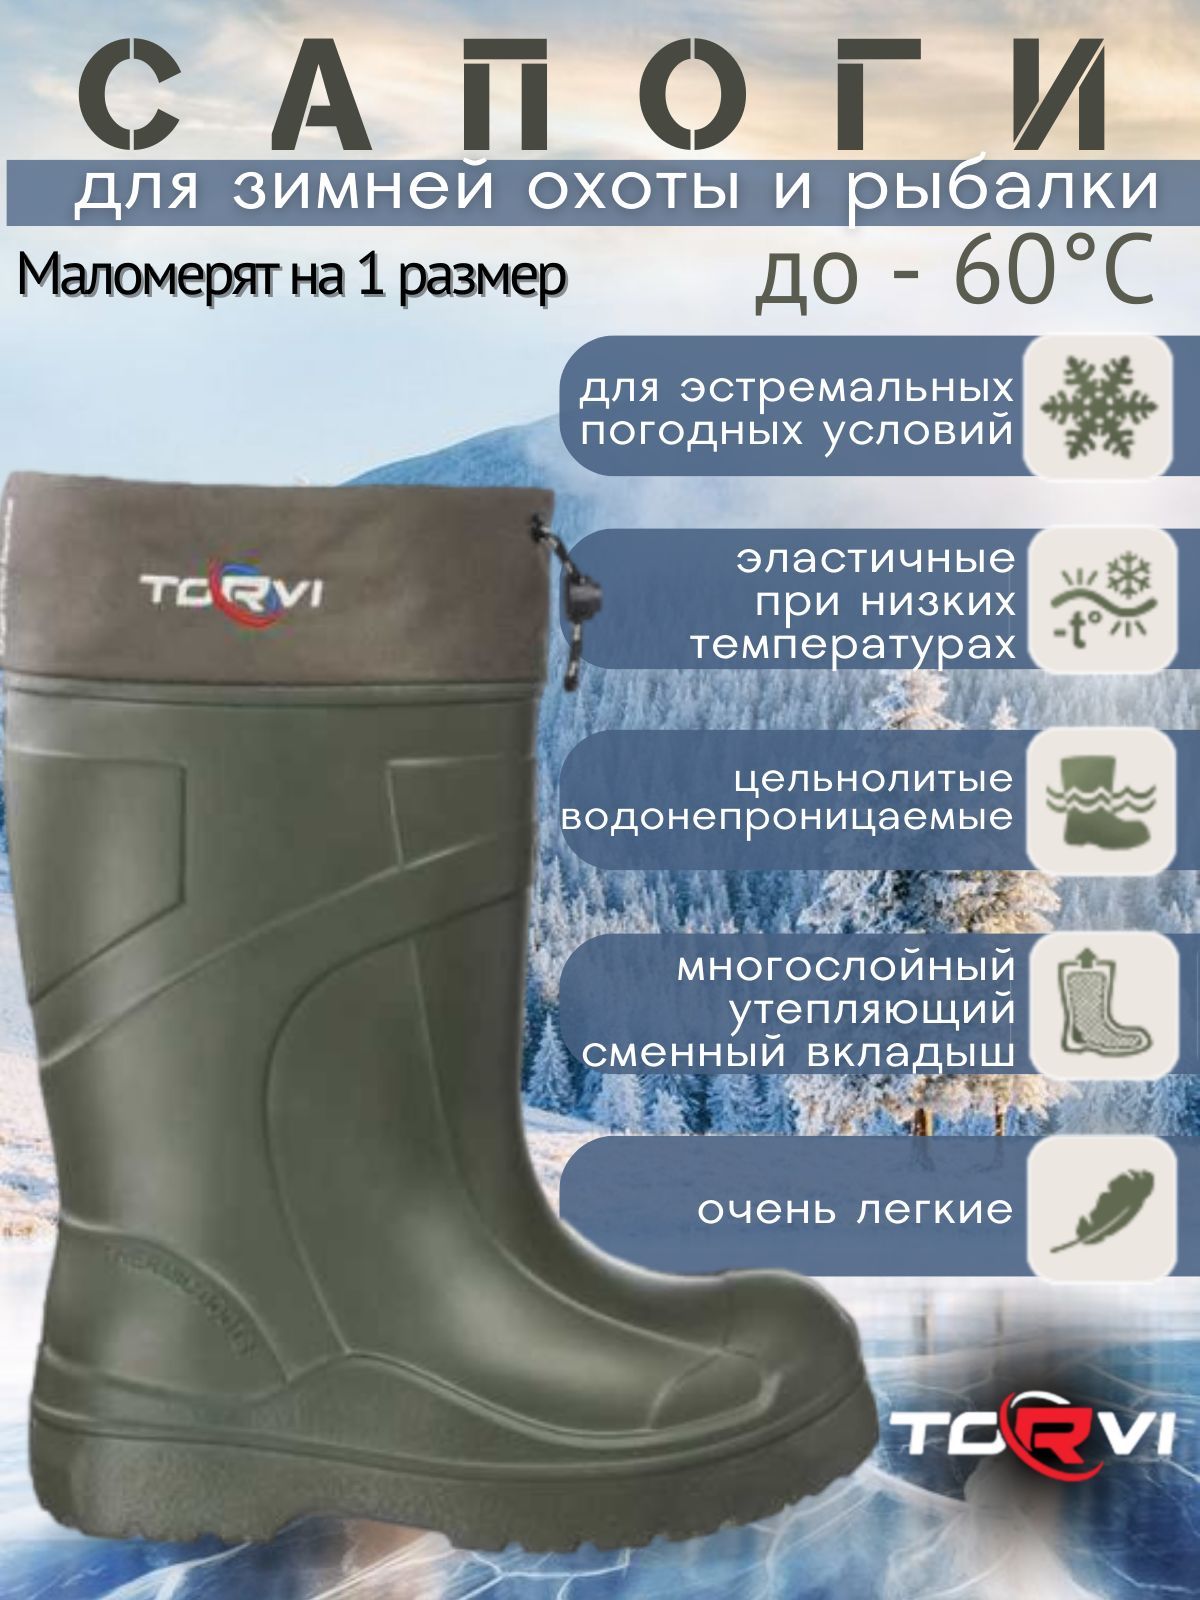 Сапоги для рыбалки Tactica 7.62, EVA, Зима - купить по низкой цене винтернет-магазине OZON (1144877434)